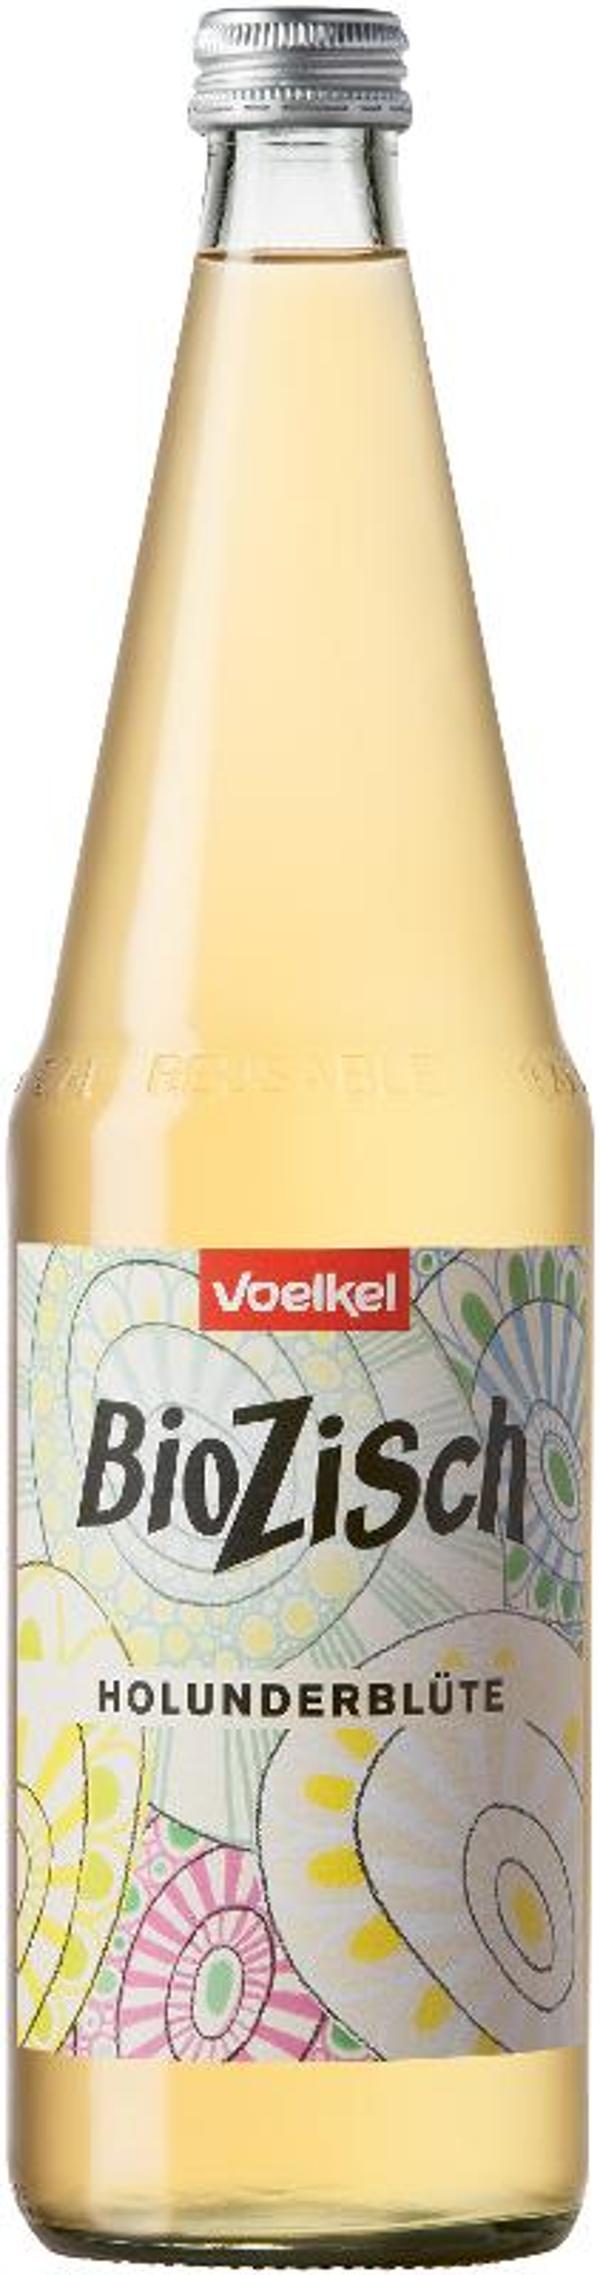 Produktfoto zu VPE BioZisch Holunderblüte 6x0,7 l Voelkel